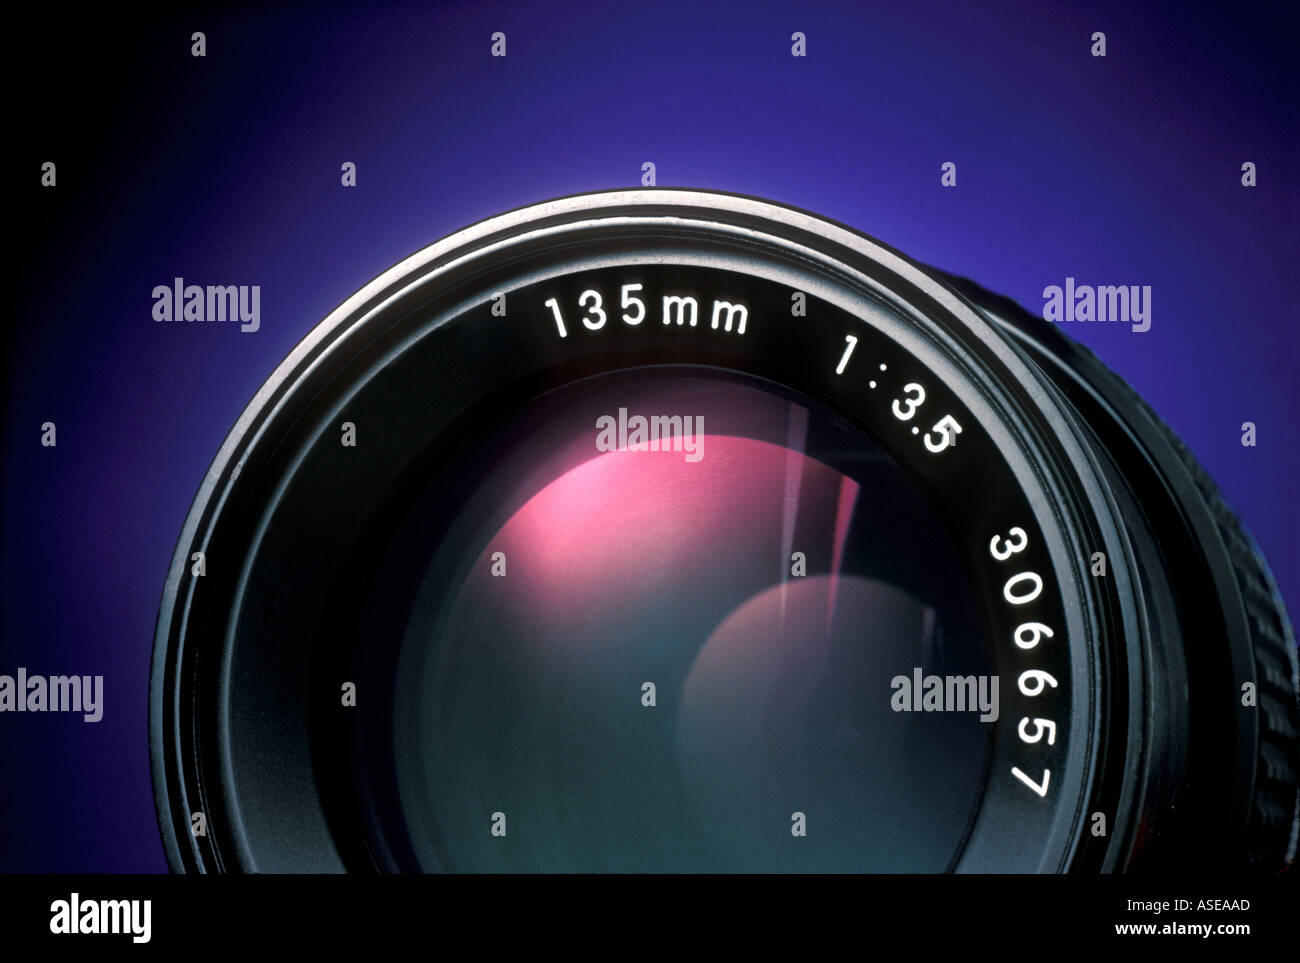 Lente de cámara de 35mm con una longitud focal de 135 mm Foto de stock